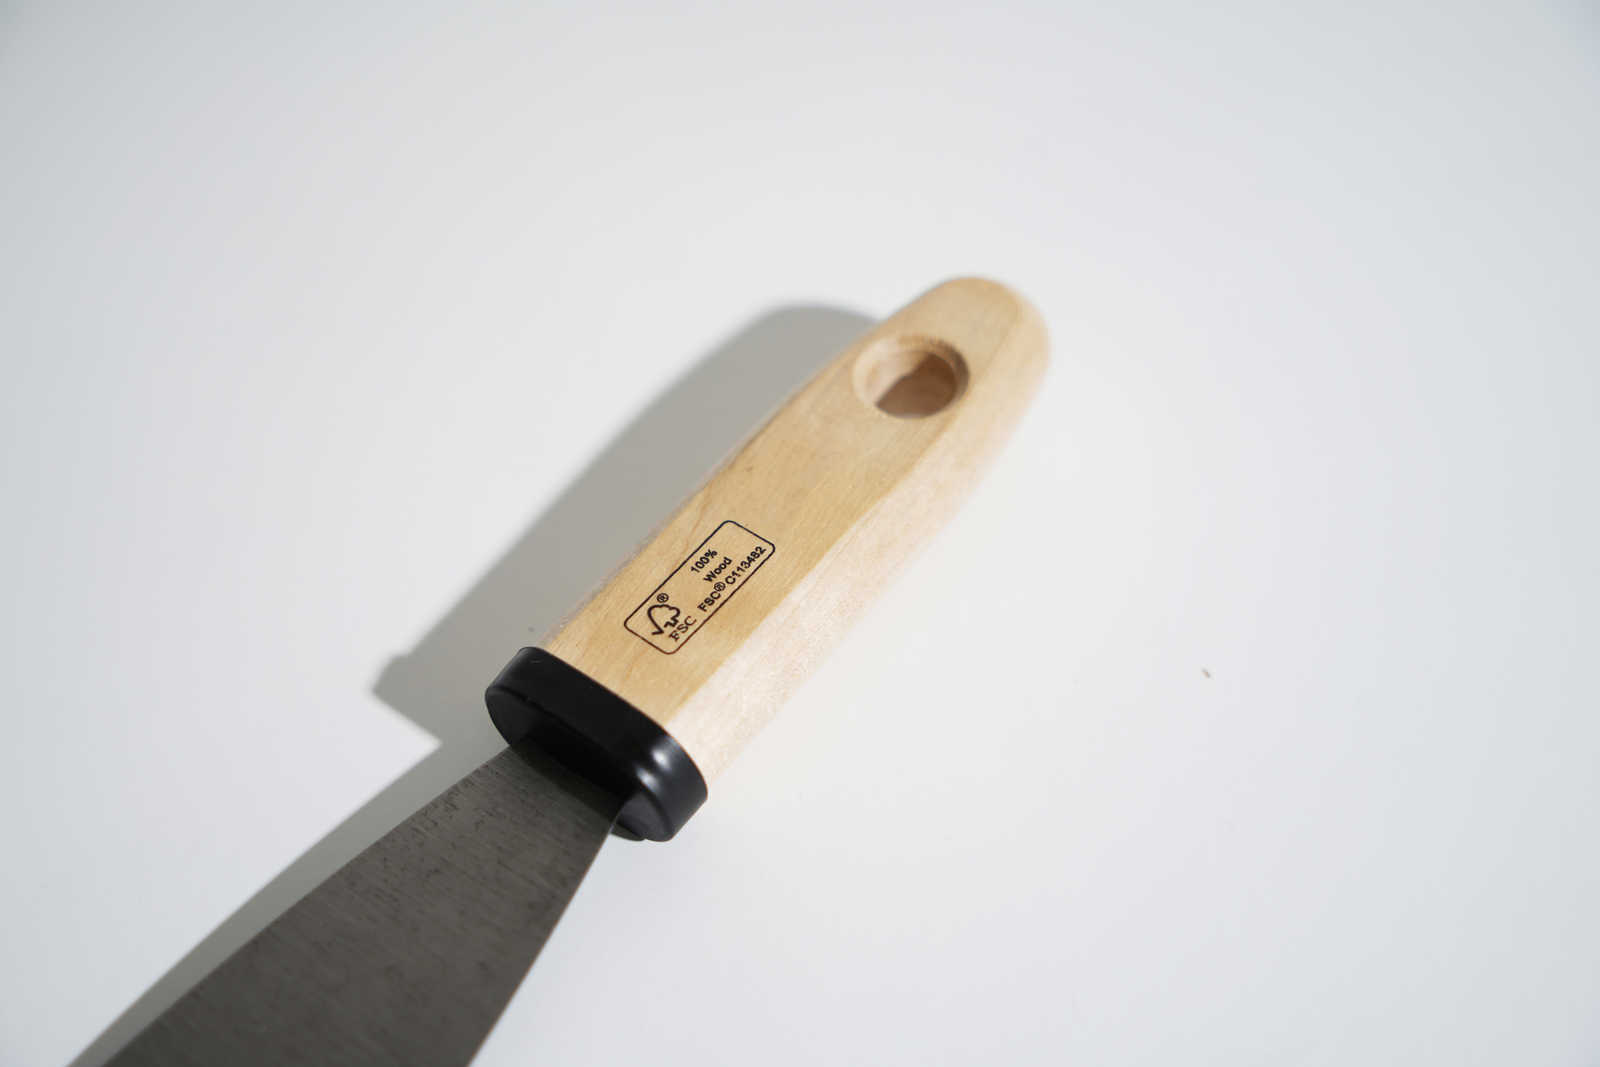             Spatule de peintre 40mm avec lame en acier flexible & manche en bois
        